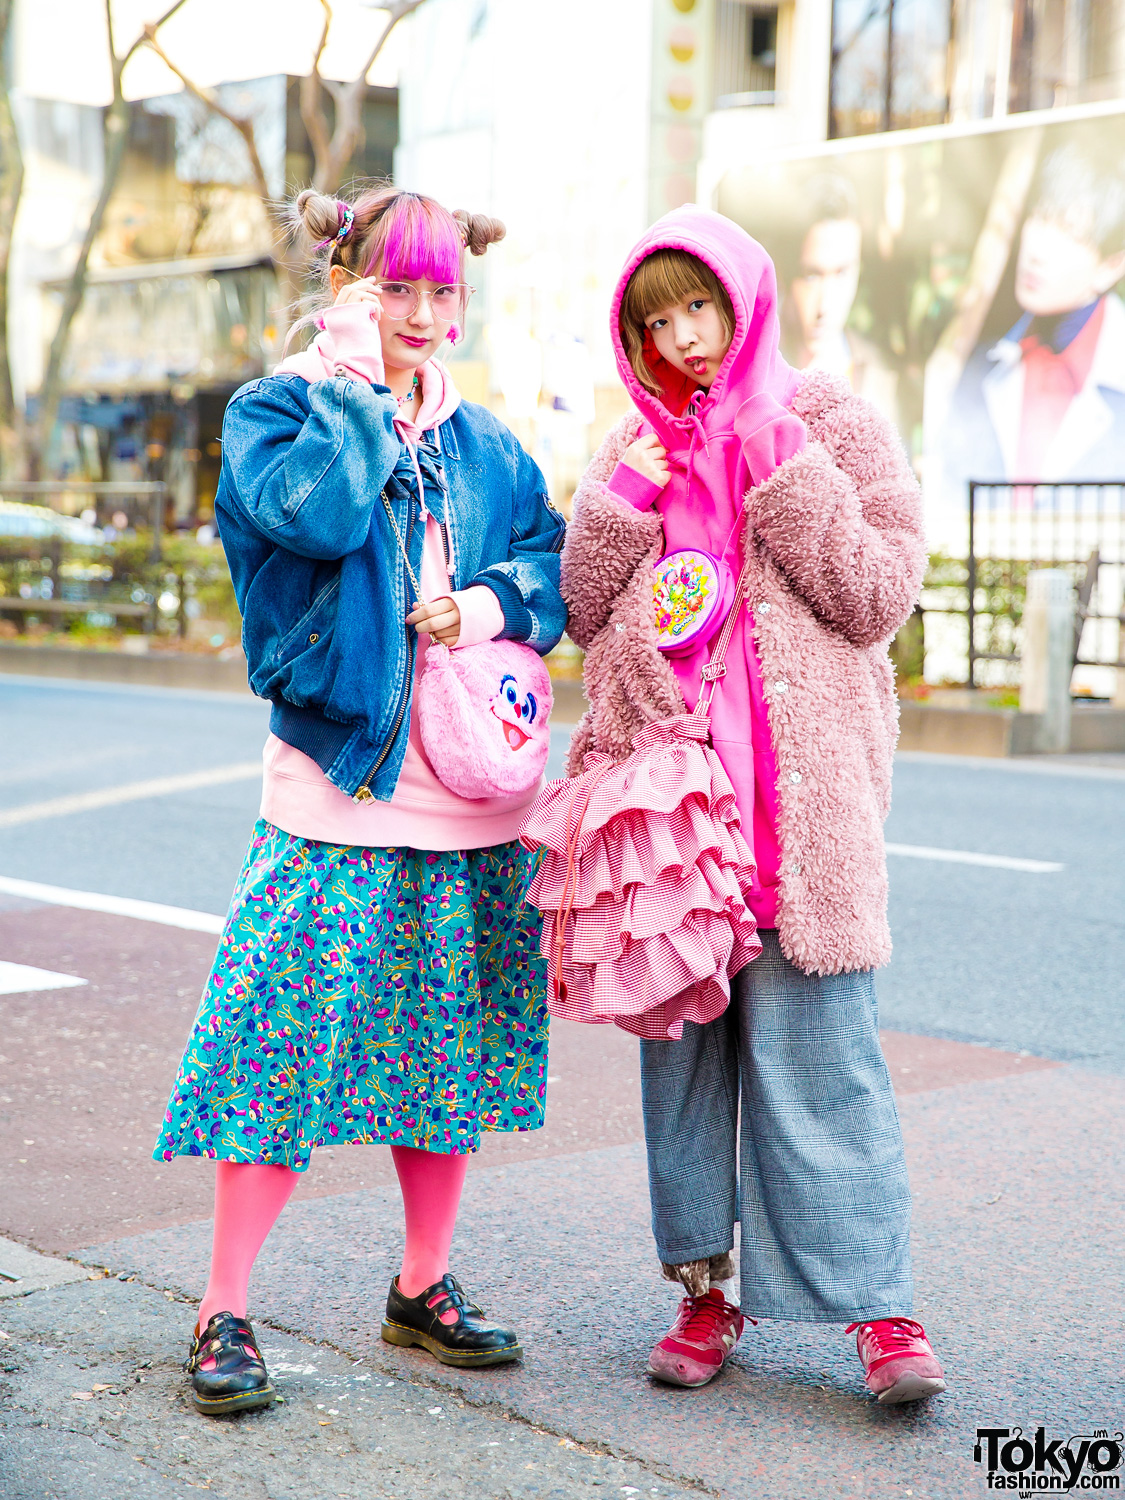 Colorful Kawaii Harajuku Vintage Street Fashion w/ Pink House, Southpaw ...